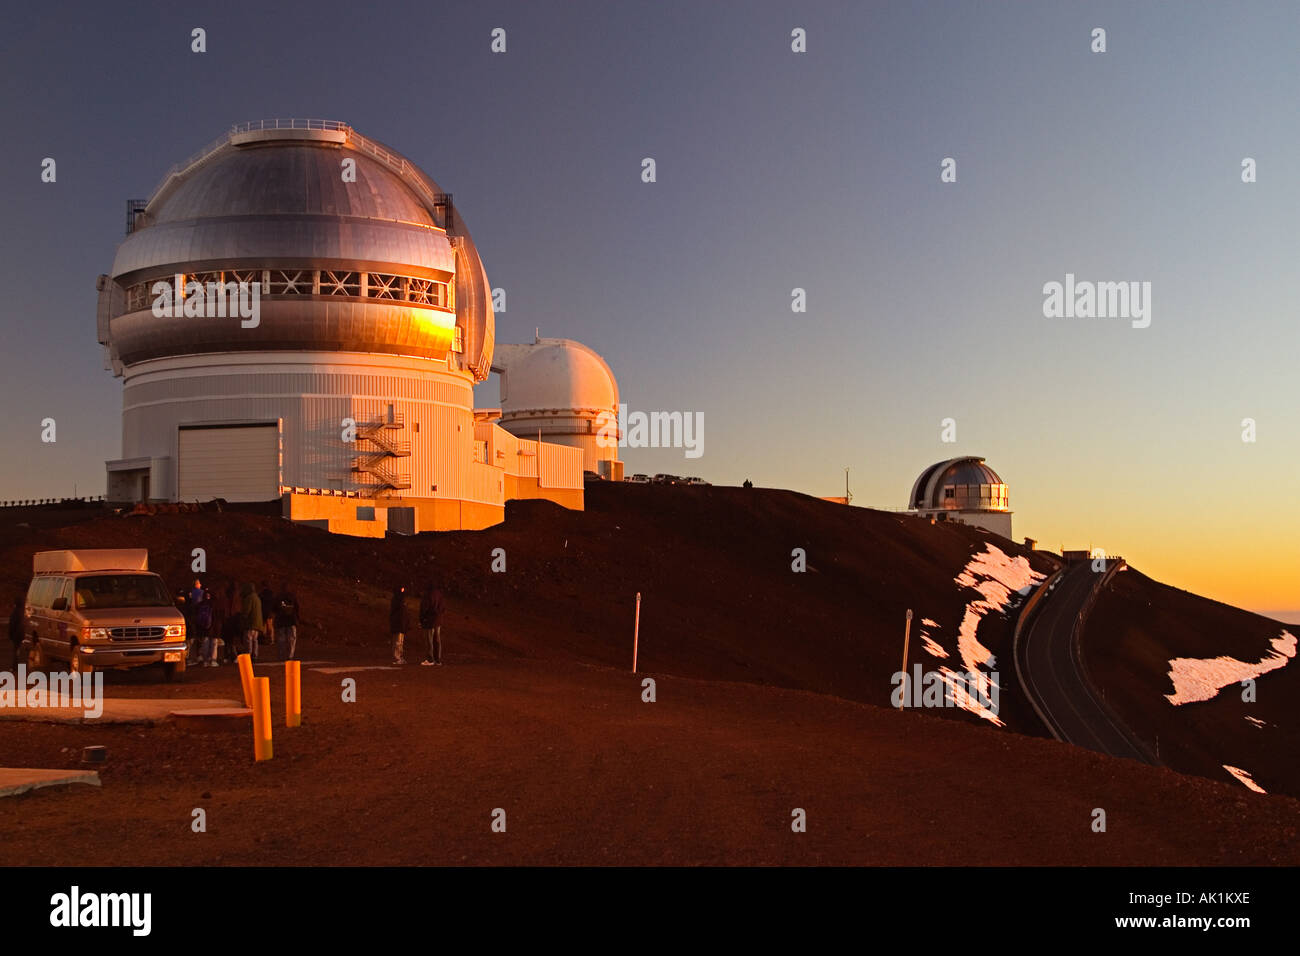 Star gazing Touristen Gemini Nord-Teleskop University of Hawaii 2 2 Meter Teleskop und Großbritannien Infrarot-Teleskop oder Stockfoto